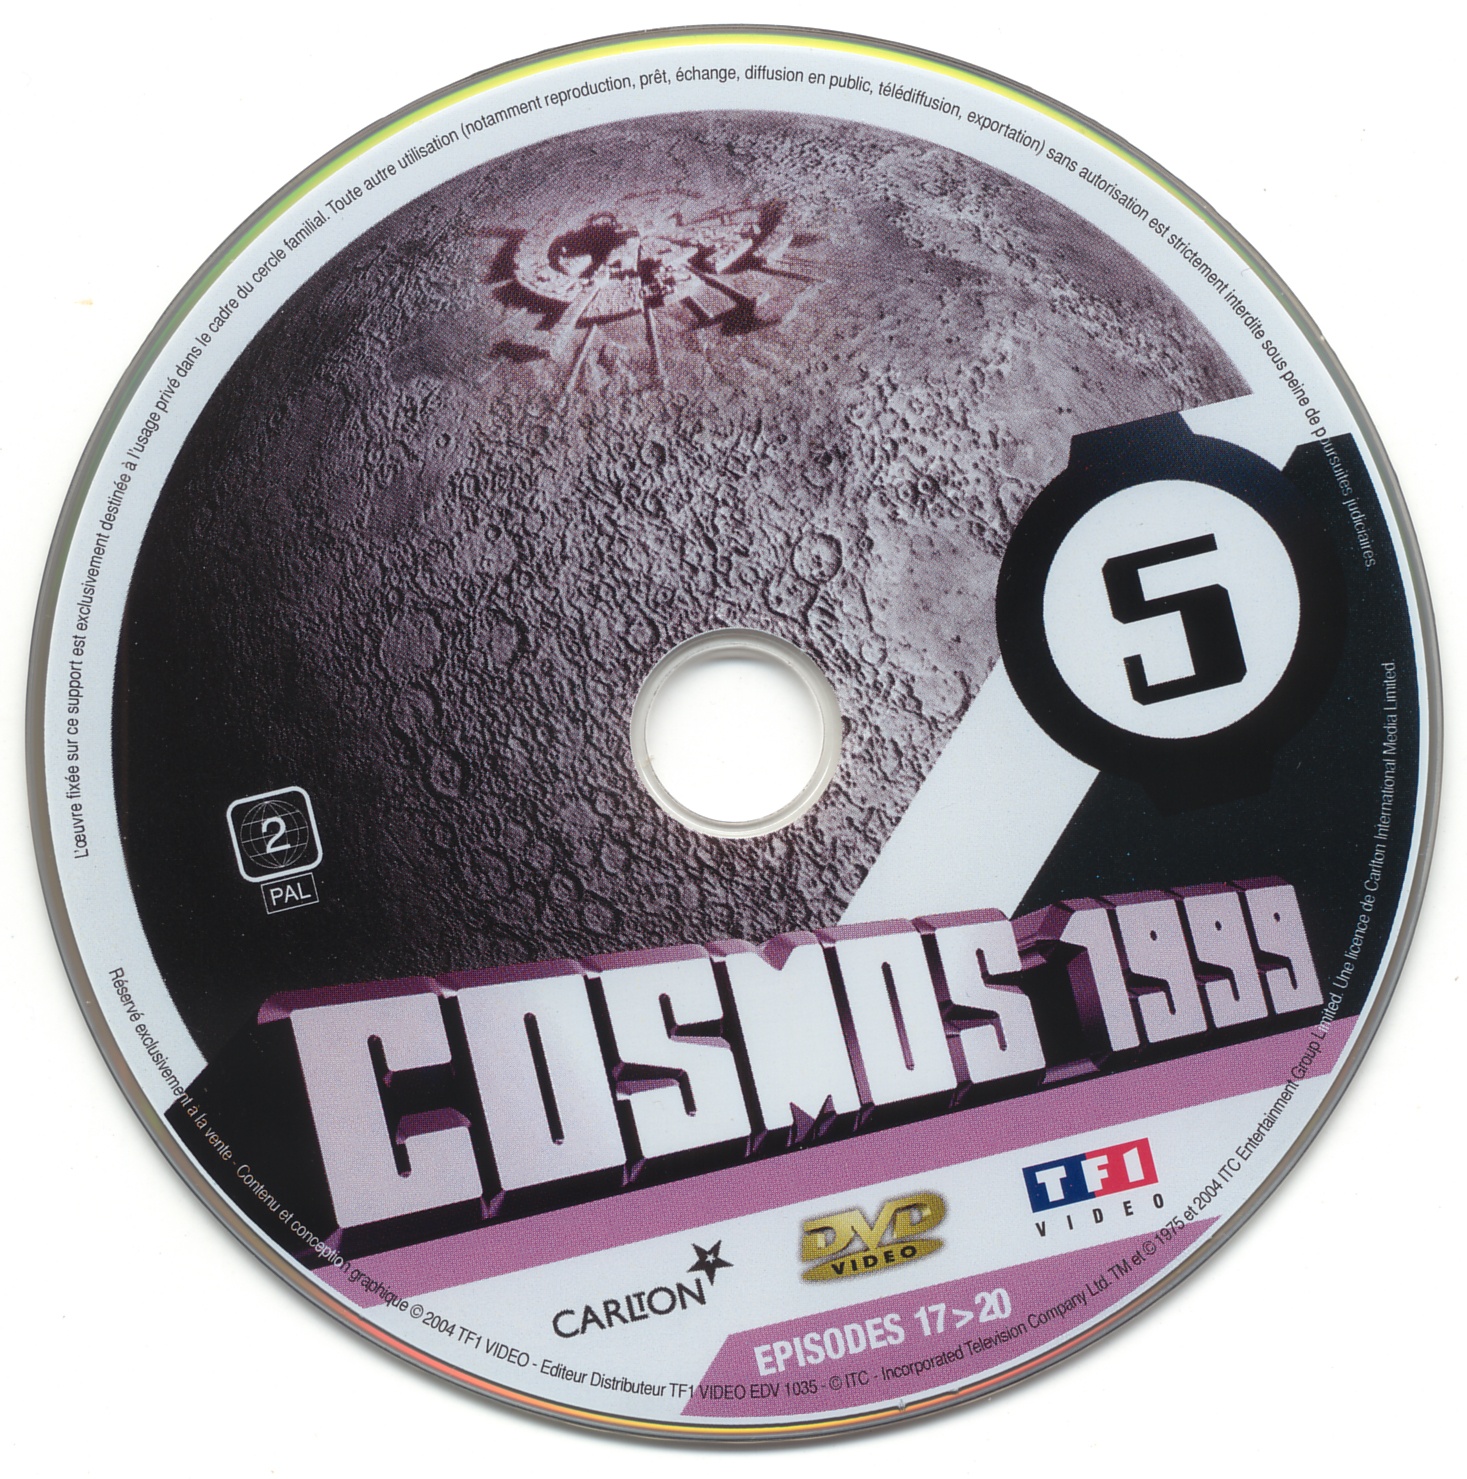 Cosmos 1999 saison 1 dvd 5